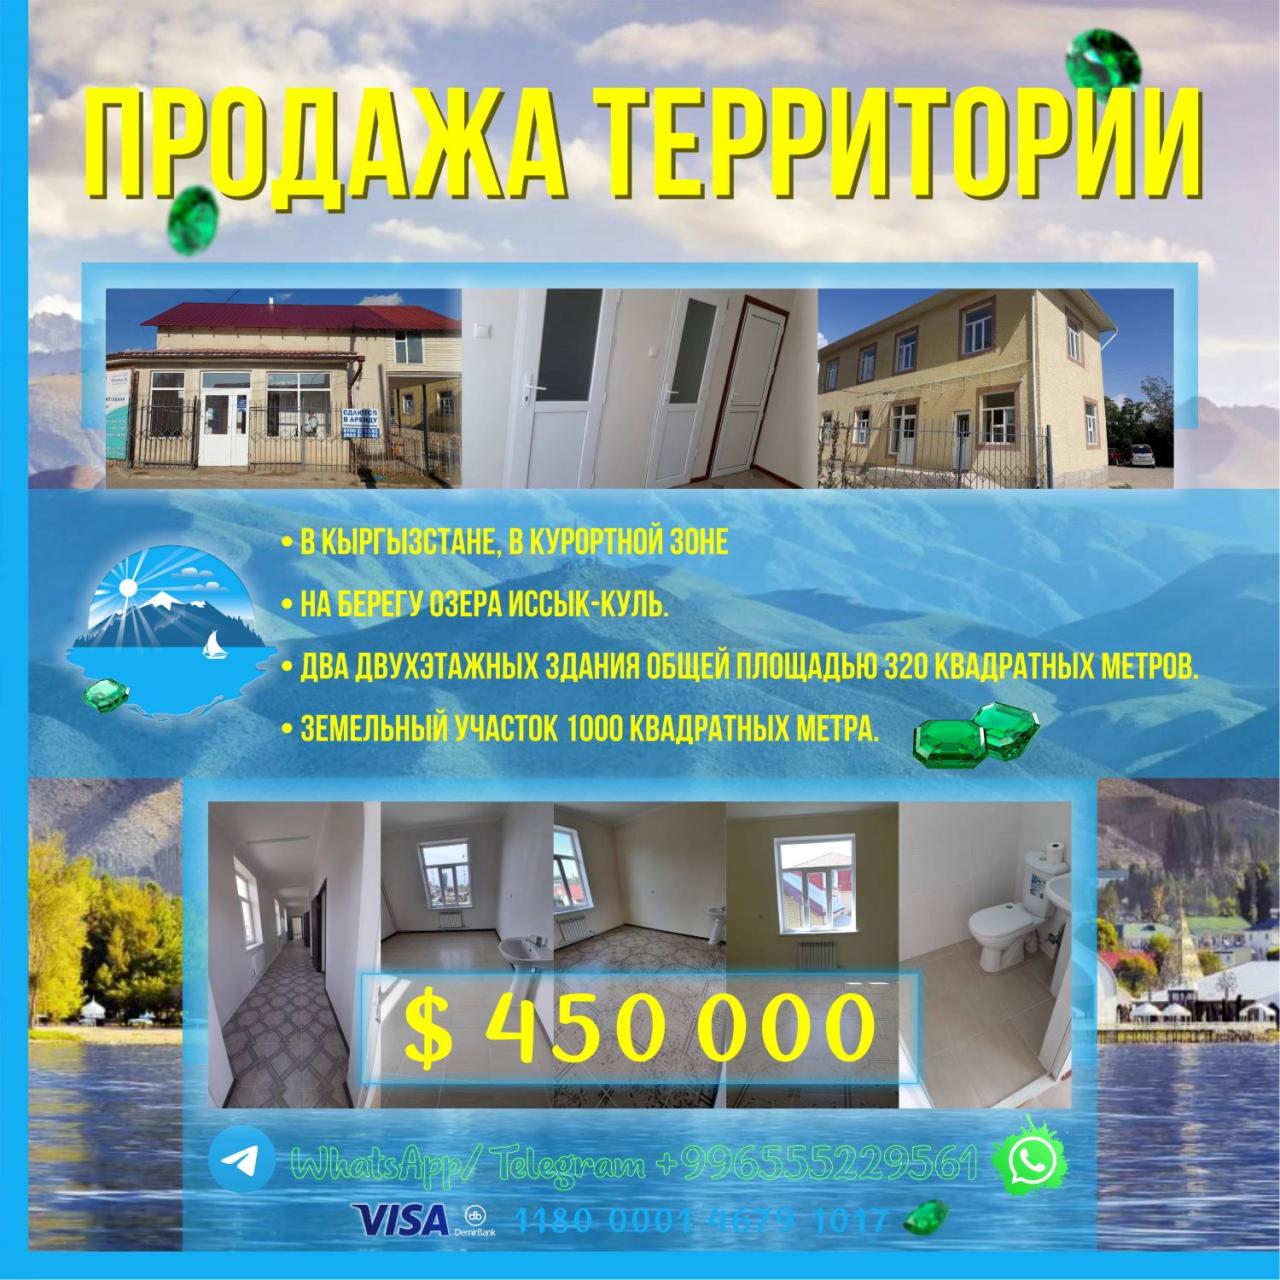 Продаётся территория в центре г. Чолпон-Ата, на берегу озера Ыссык-Кул ...